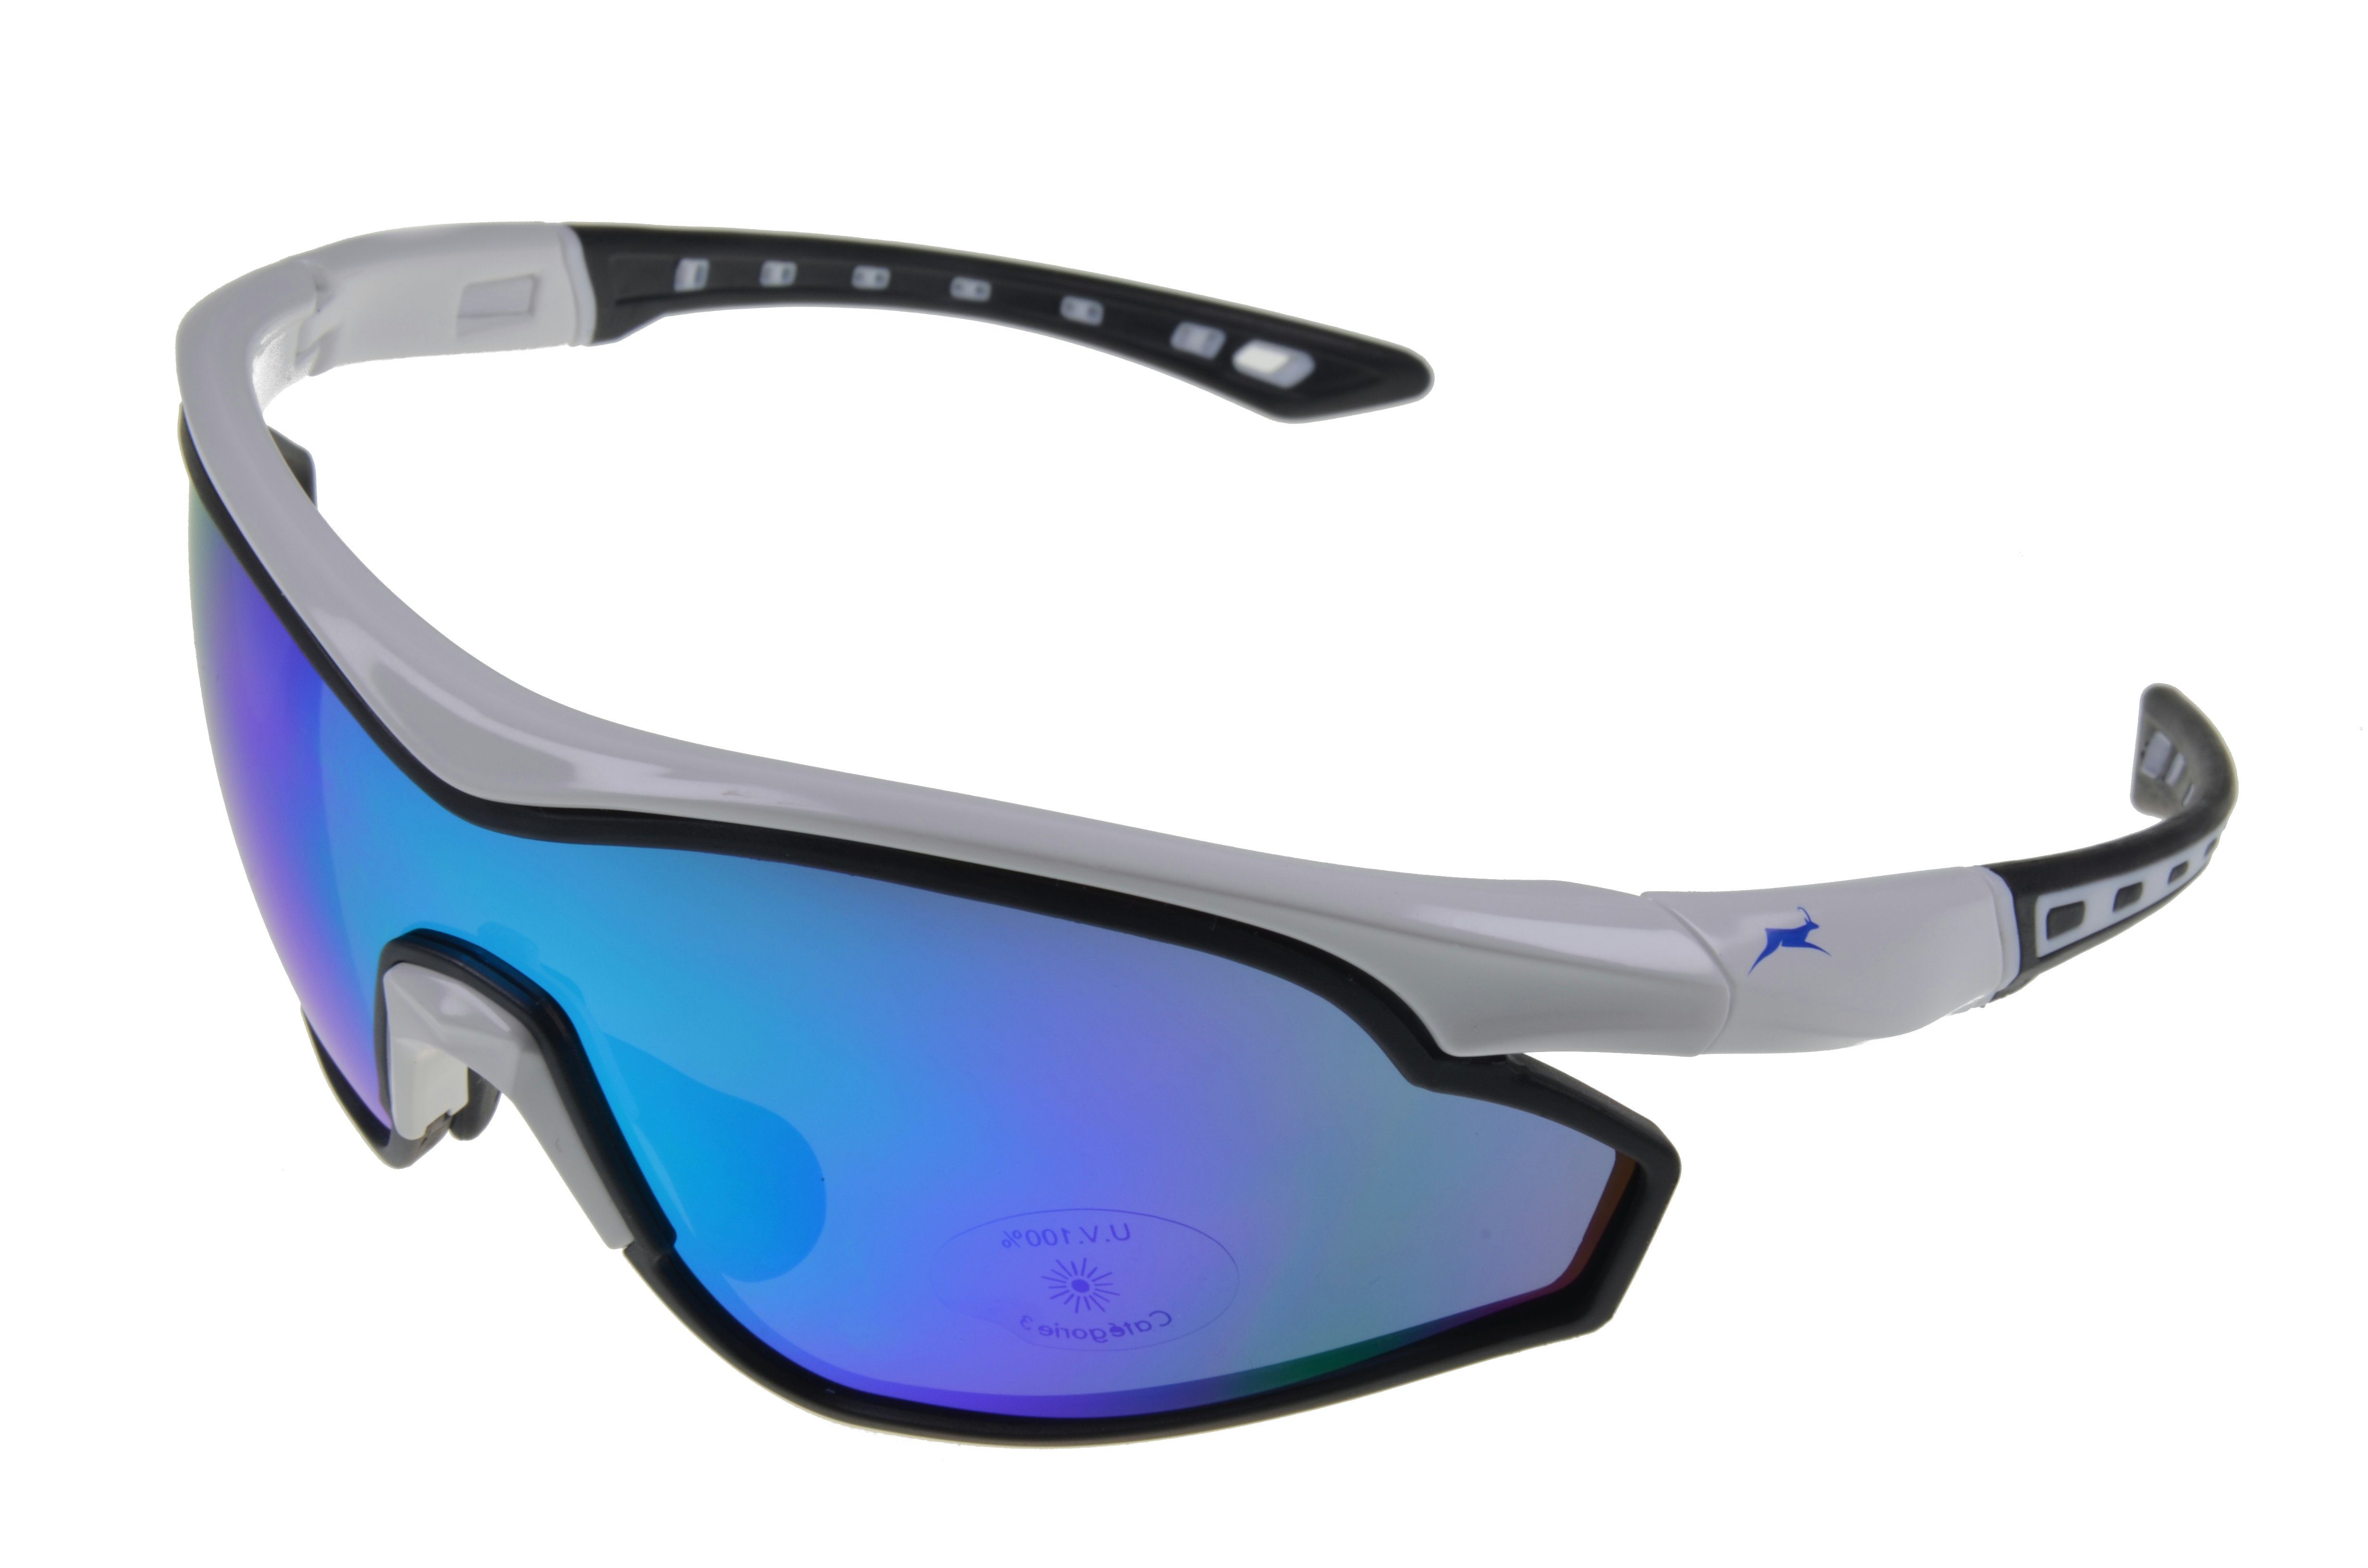 Gamswild Sportbrille WS7534 Sonnenbrille Damen Herren Fahrradbrille Skibrille Unisex, weiß, blau, grün, "Neuerscheinung 2022"